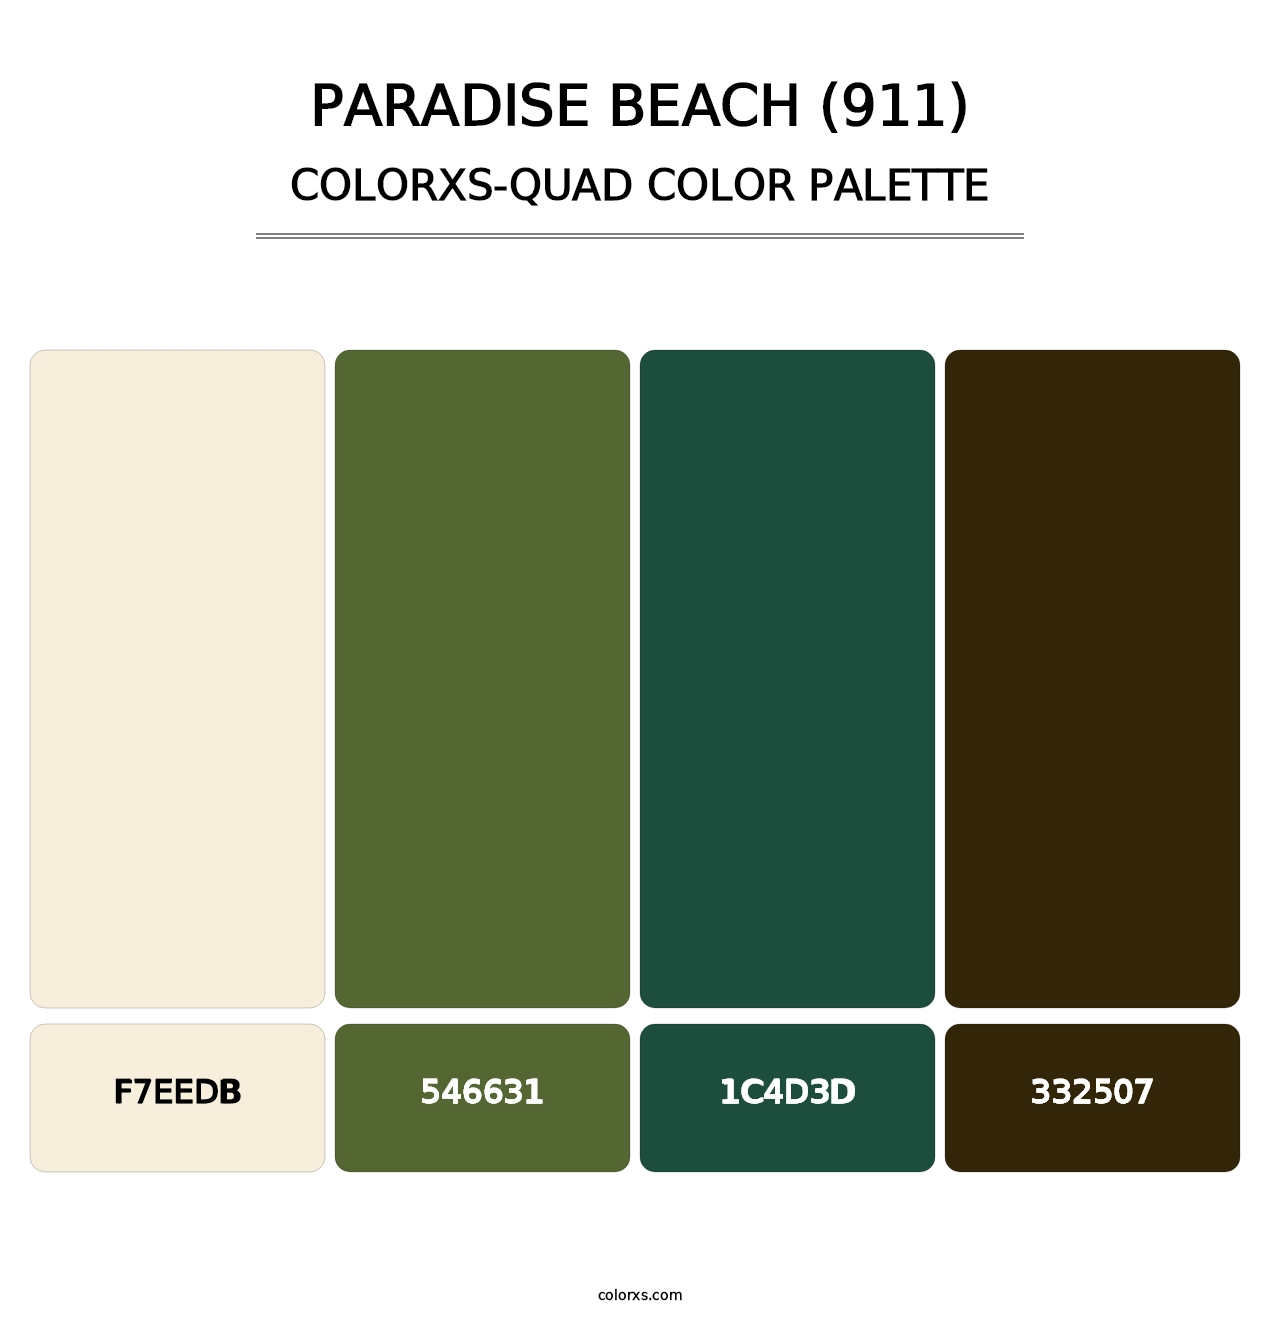 Paradise Beach (911) - Colorxs Quad Palette